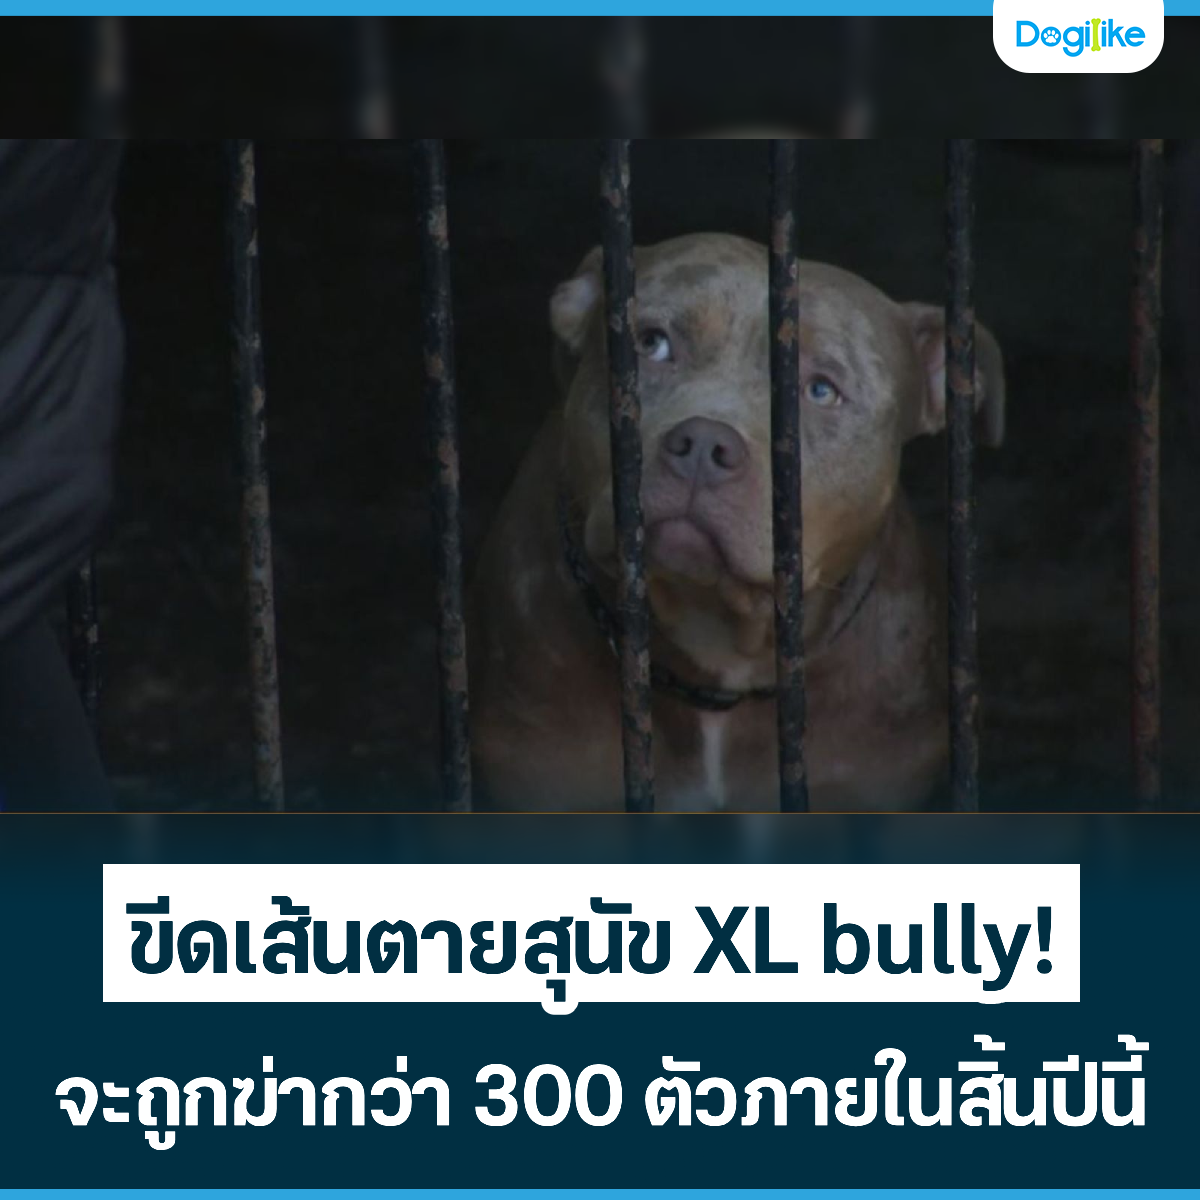 Dogilike.com :: �մ��鹵���عѢ XL bully! �ж١��ҡ��� 300 ���������鹻չ��